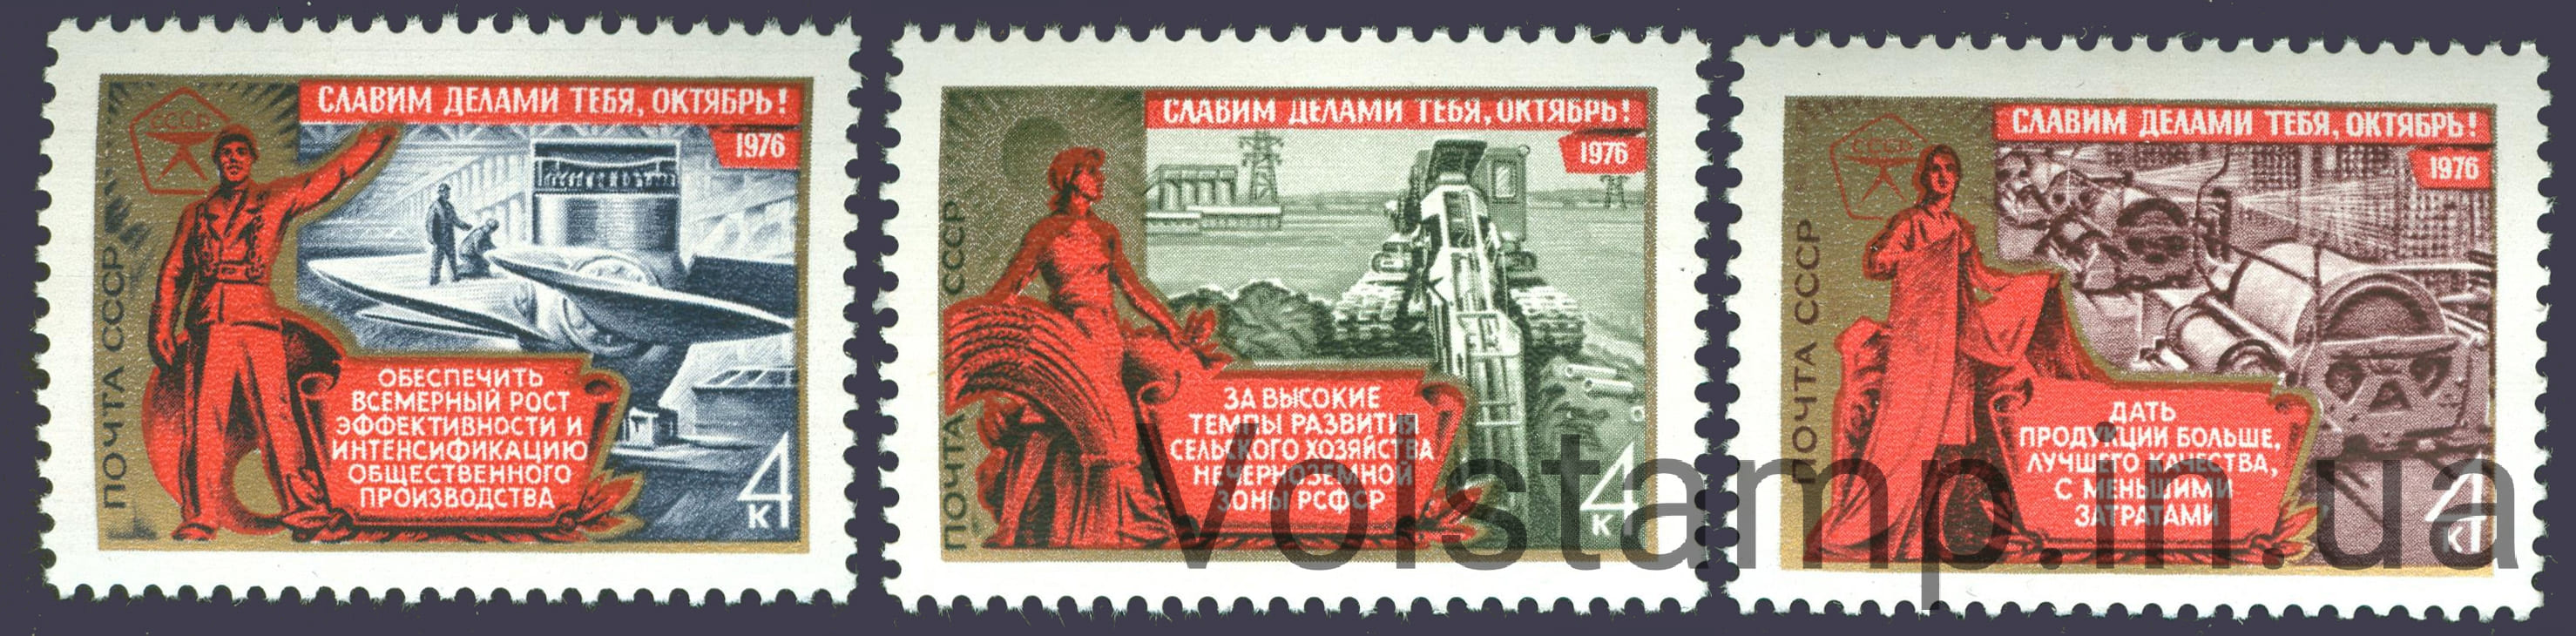 1976 серия марок 59 лет Октябрьской социалистической революции №4585-4587